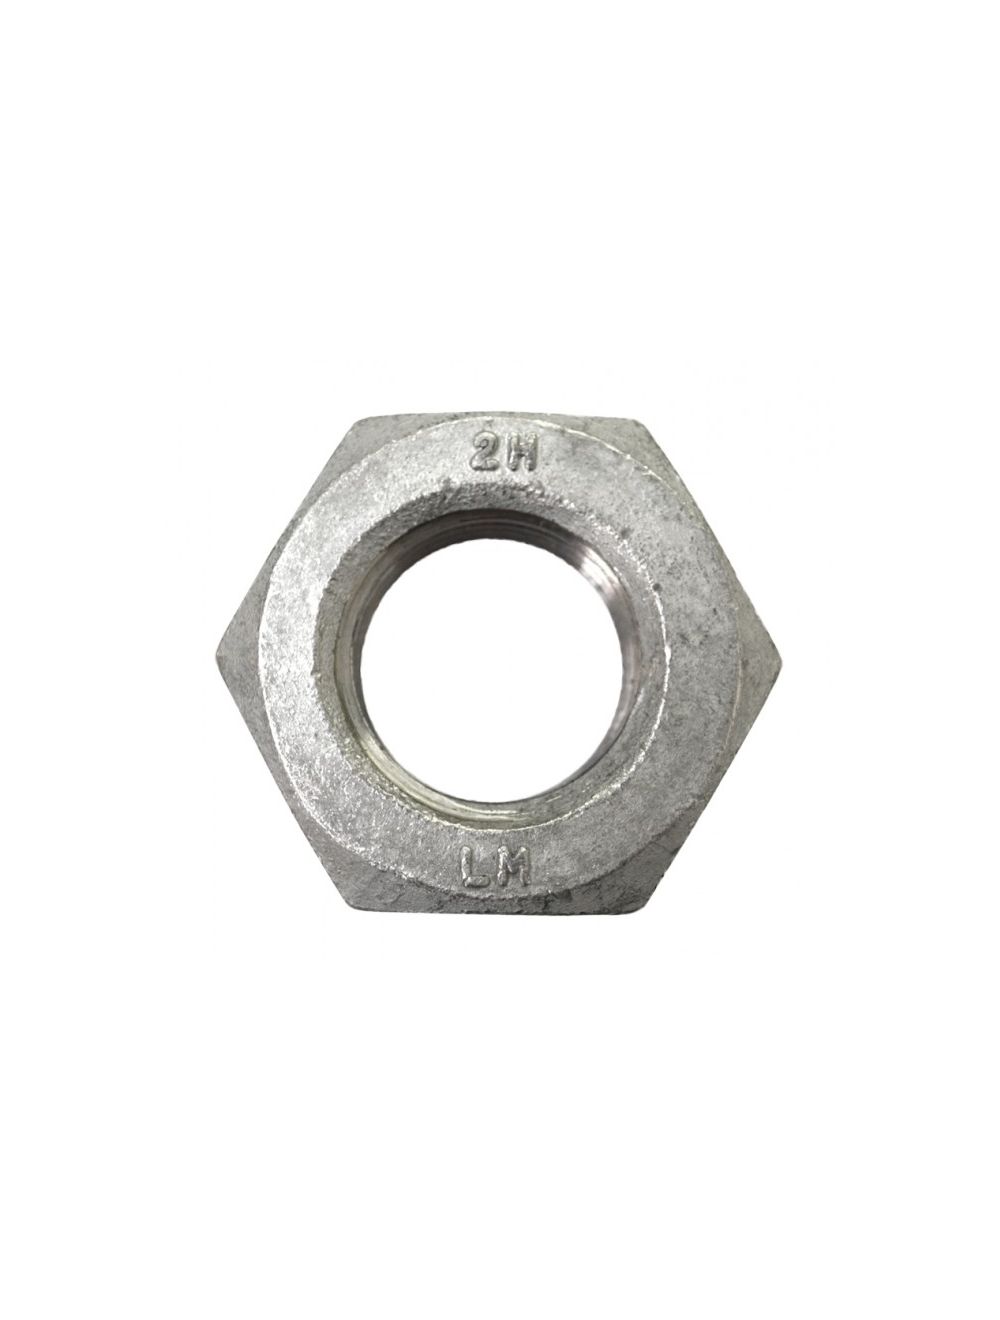 1 1/2-6 Heavy Hex Nut Quantity: 30 pcs A563 Grade A Steel/Plain 